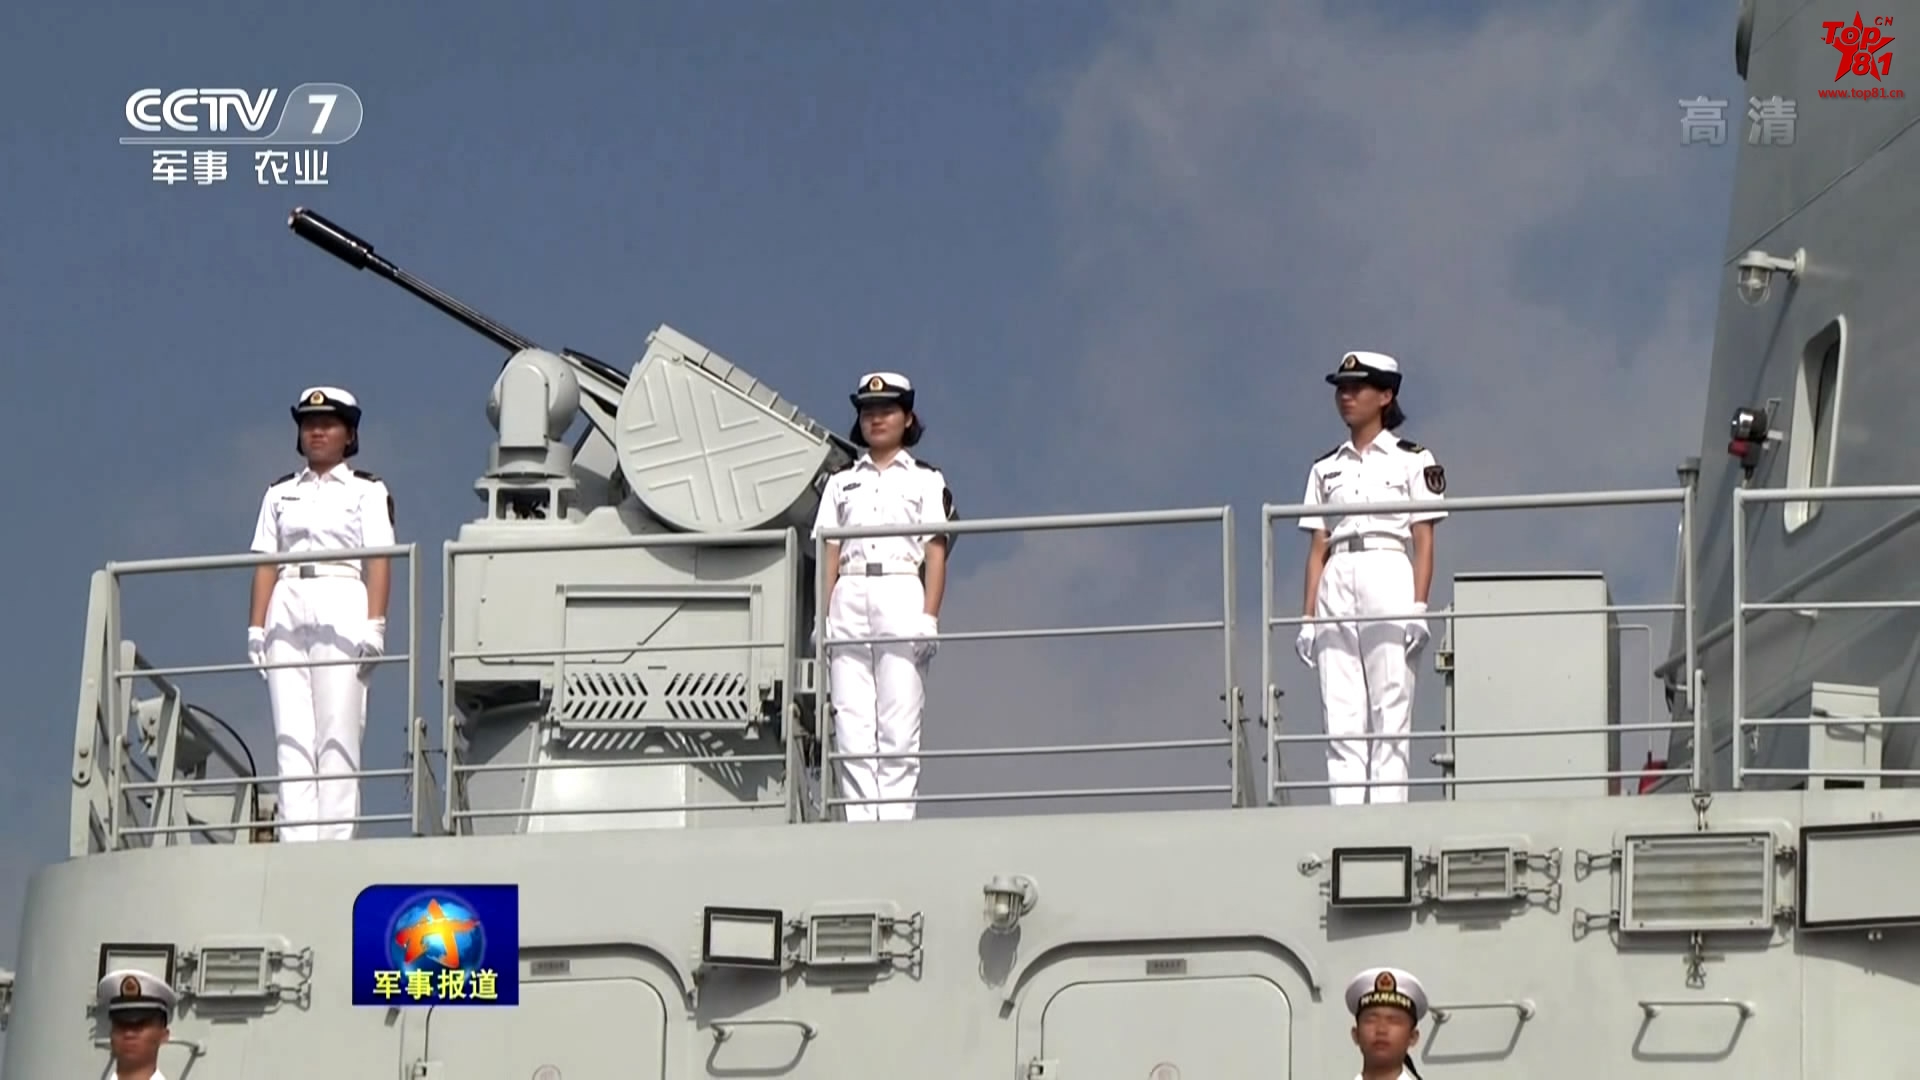 自此,两艘远海综合补给舰正式加入海军南海舰队战斗序列,同时也标志着